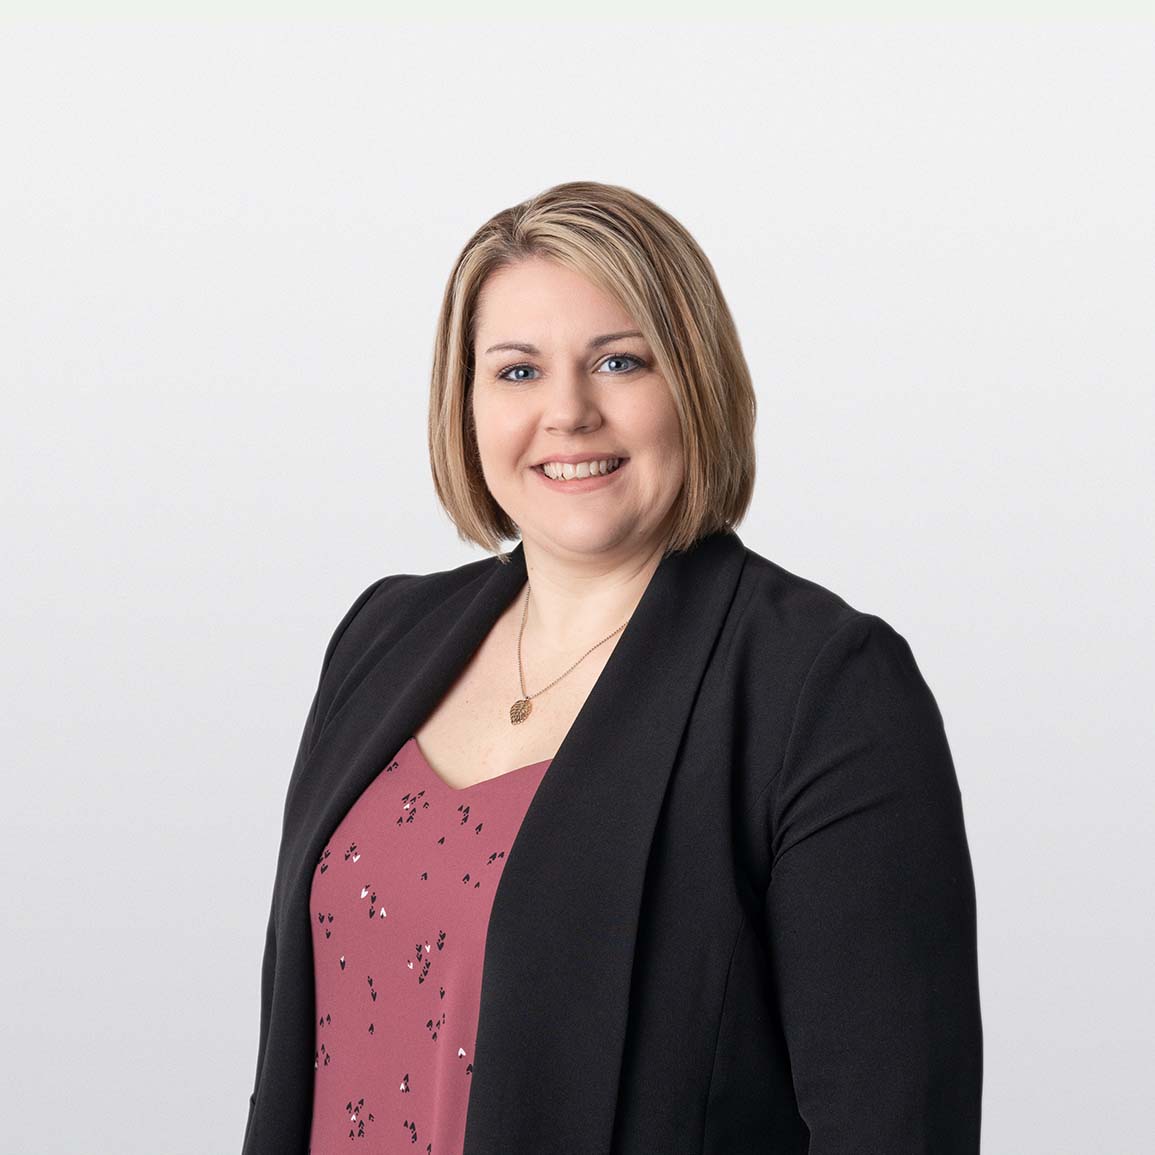 Image of Allison Clark senior financial advisor on white background